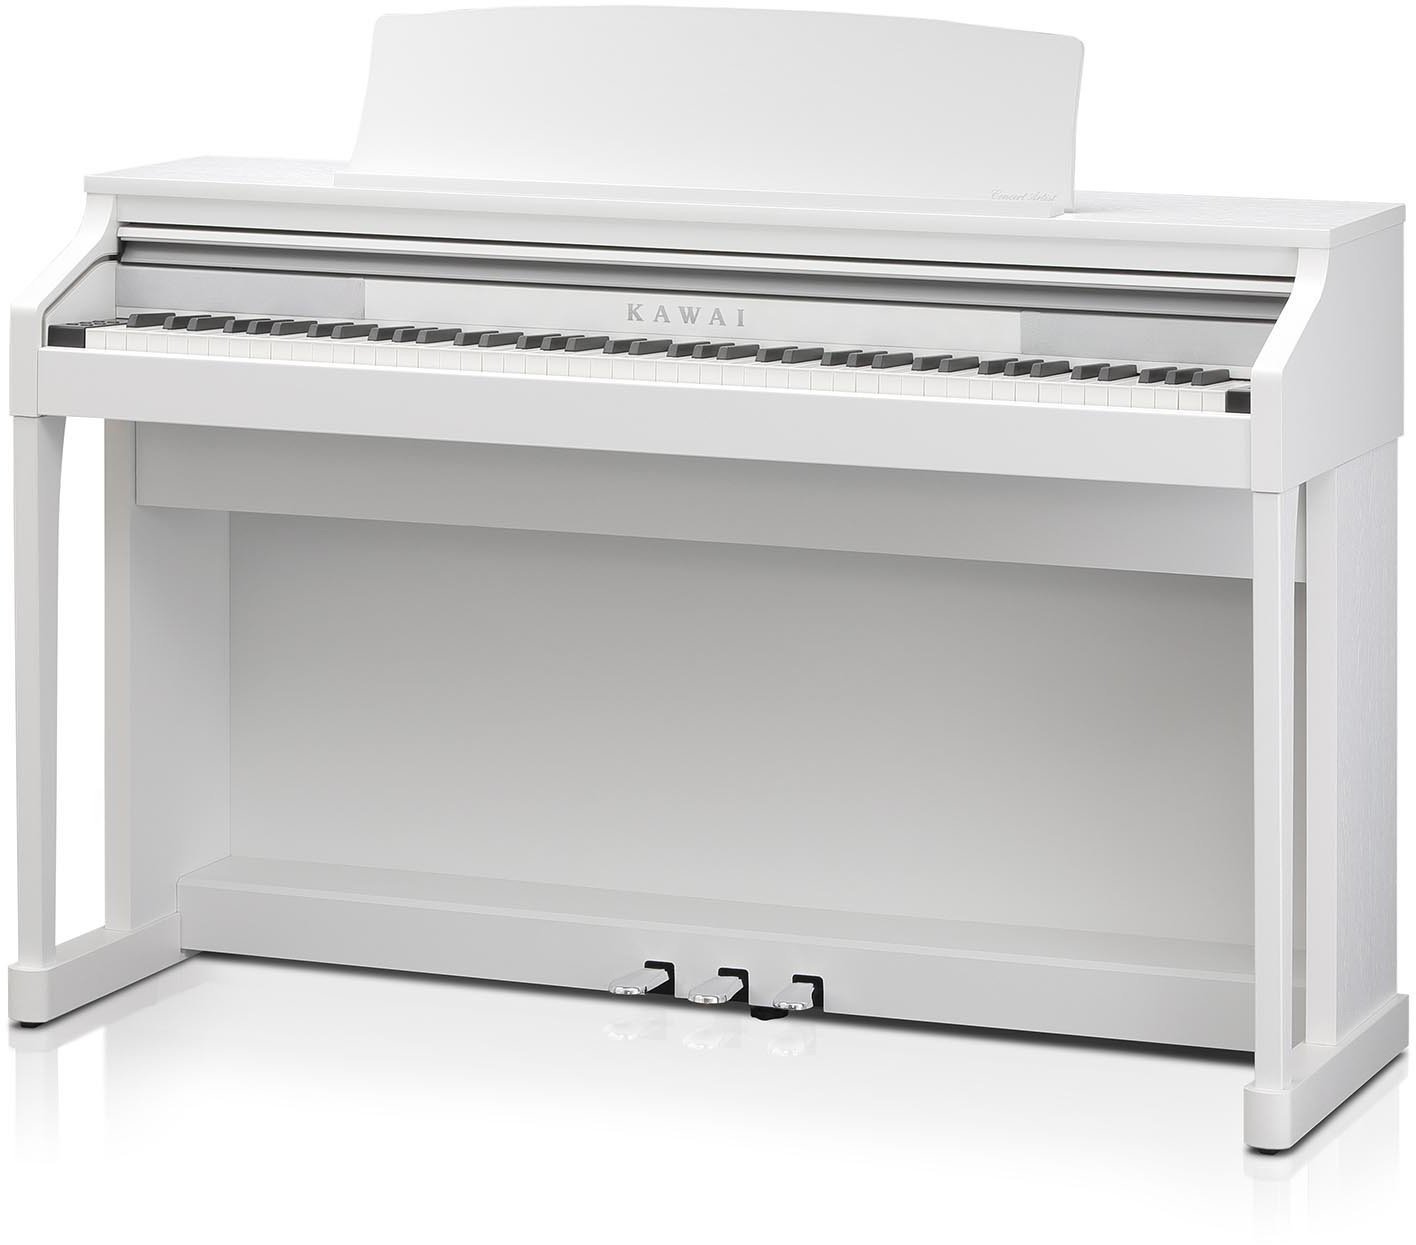 Ψηφιακό Πιάνο Kawai CA17 White